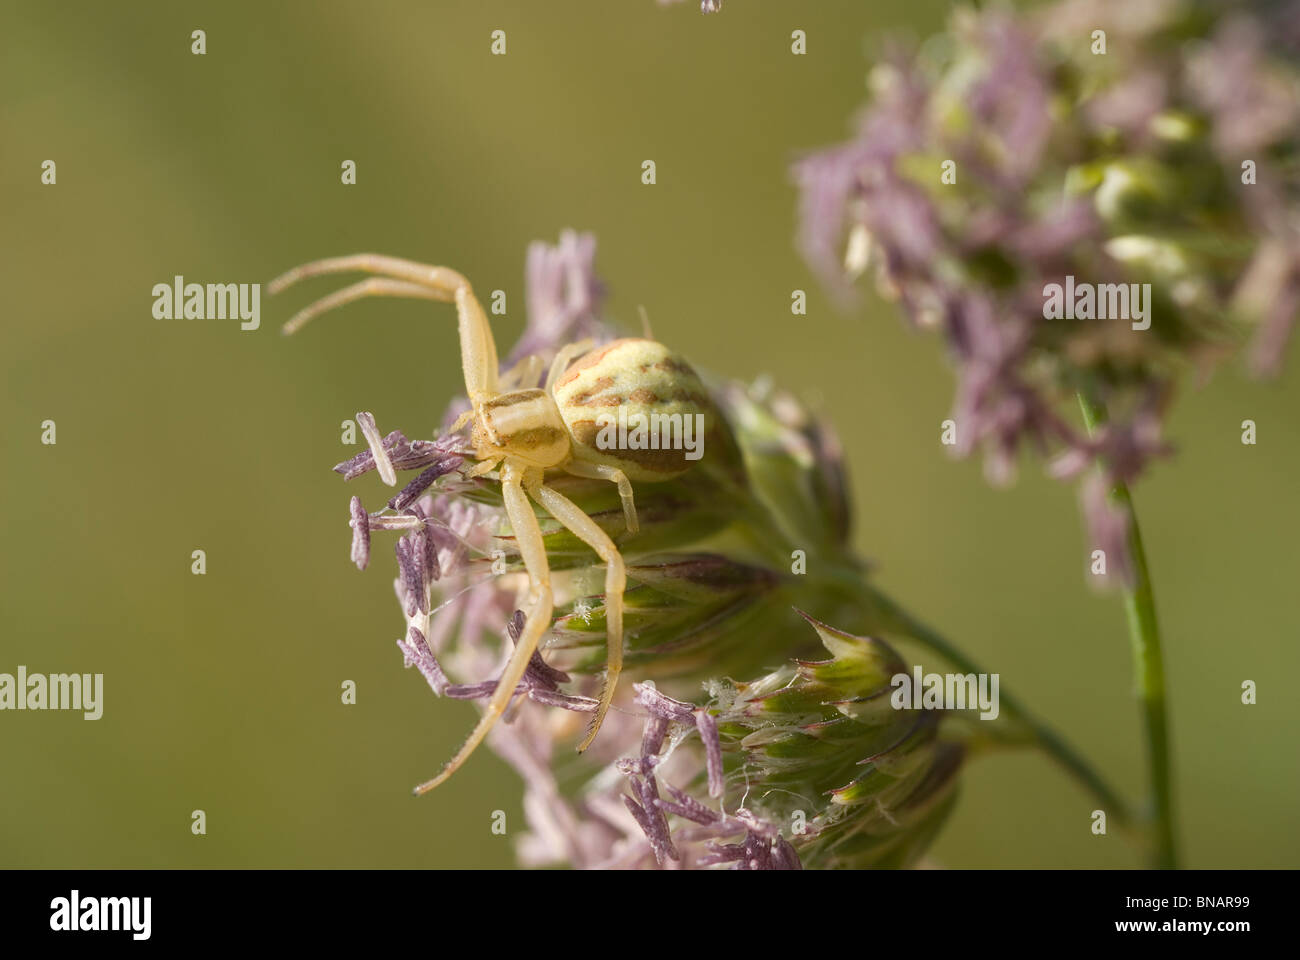 Araignée crabe (Runcinia grammica) sur le dactyle (Dactylis glomerata) Banque D'Images